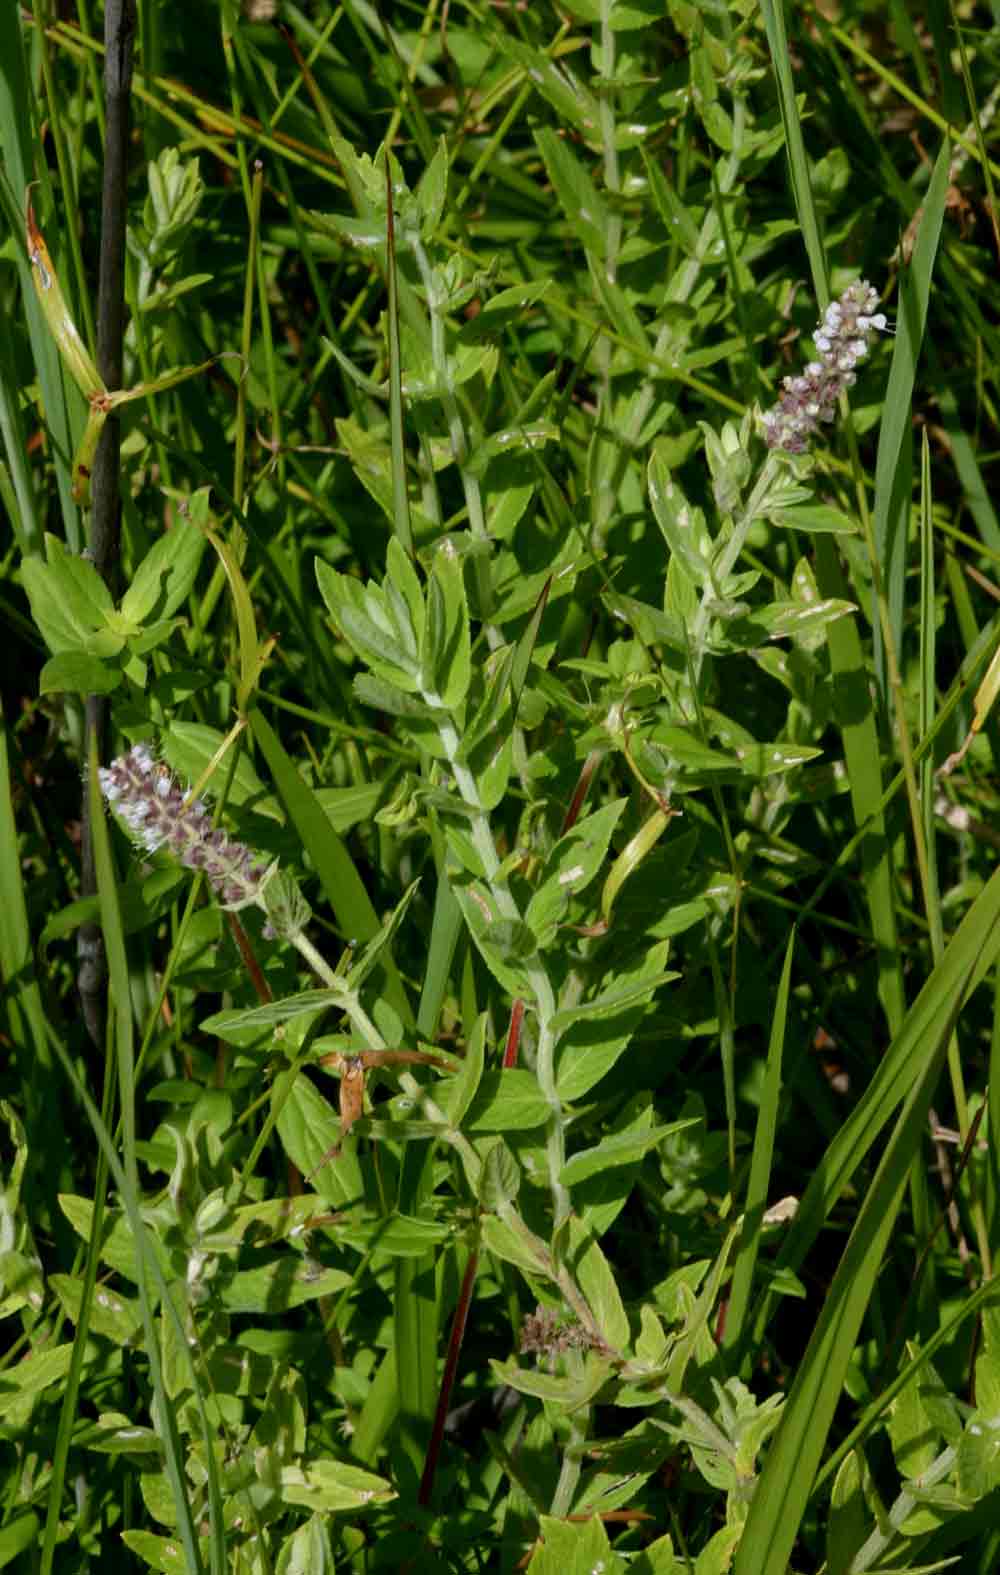 Mentha longifolia subsp. capensis